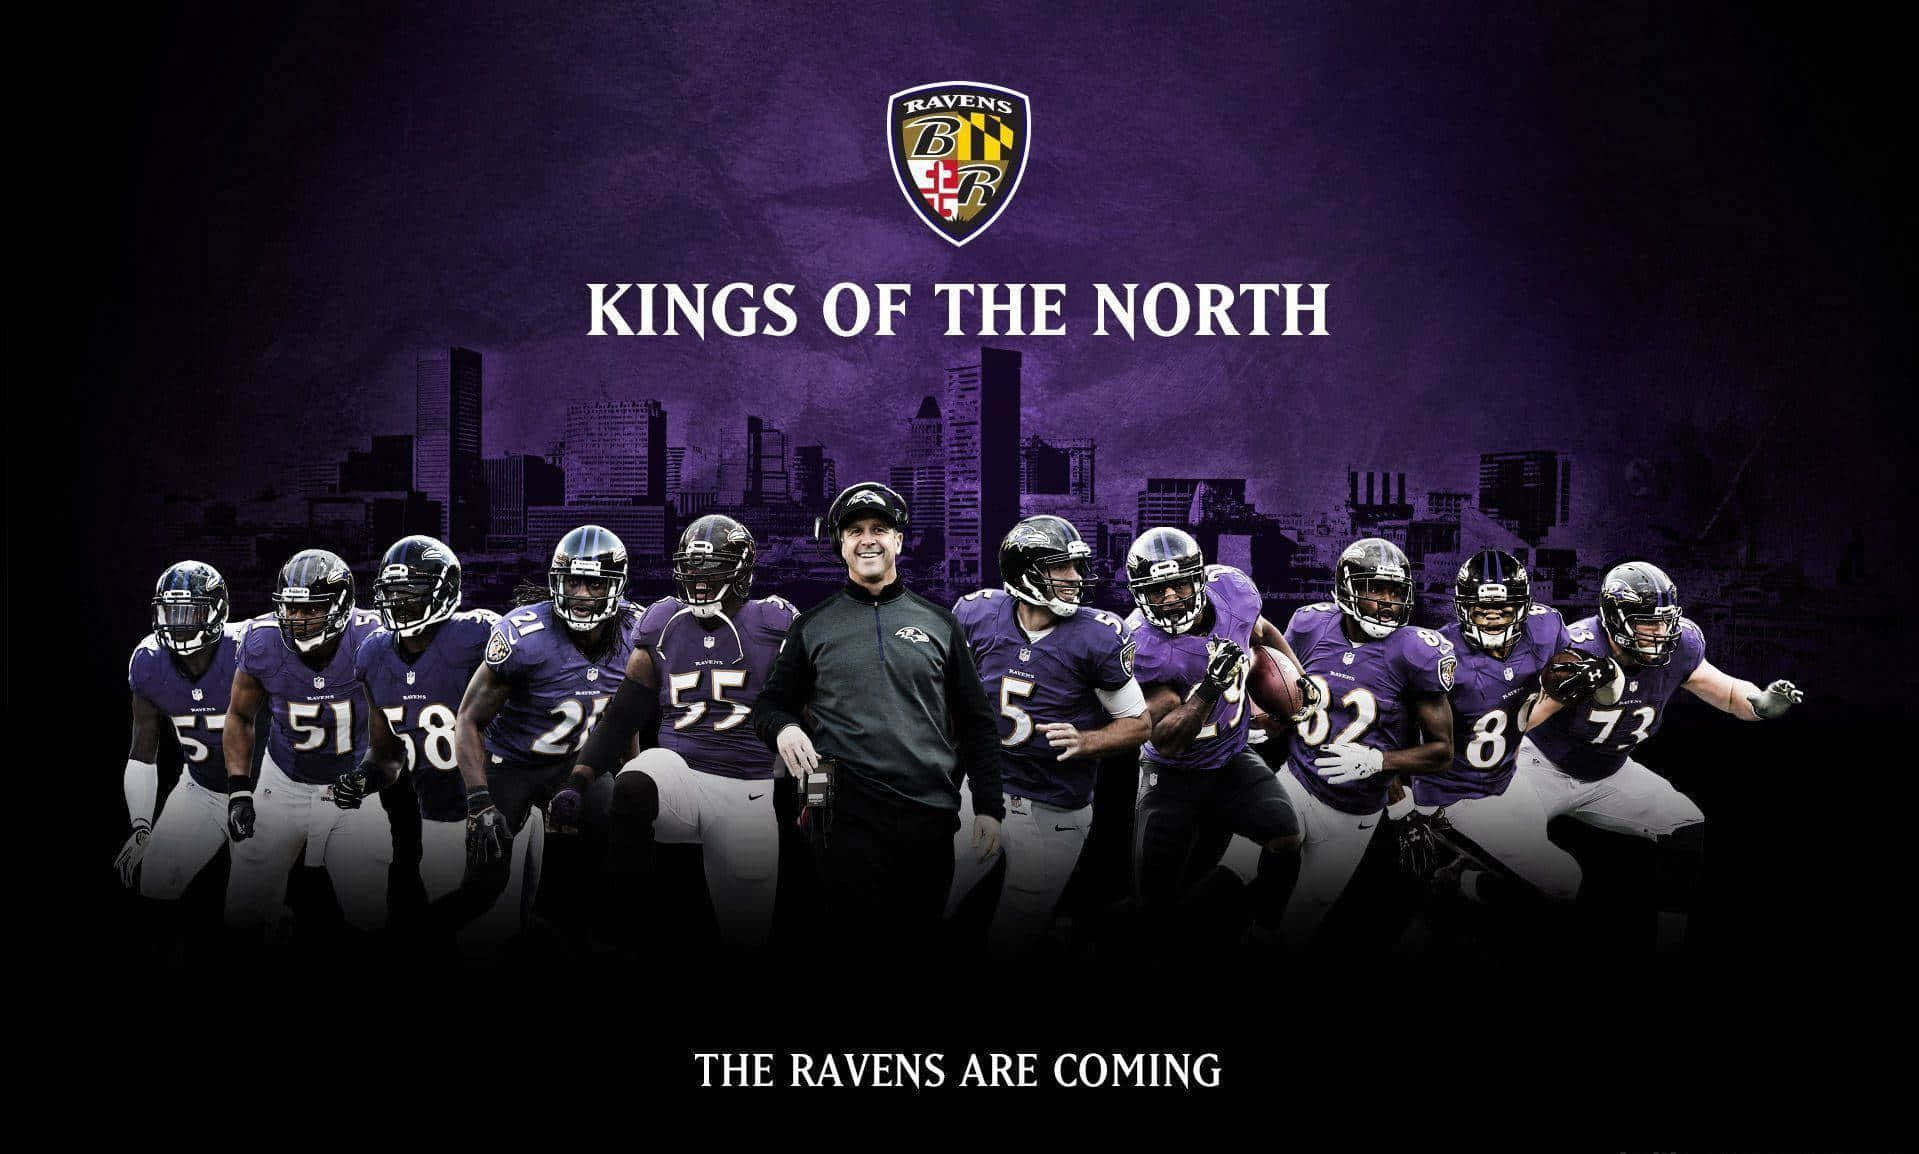 Preparatiper Il Giorno Di Gioco Con Questo Sfondo Dei Baltimore Ravens.